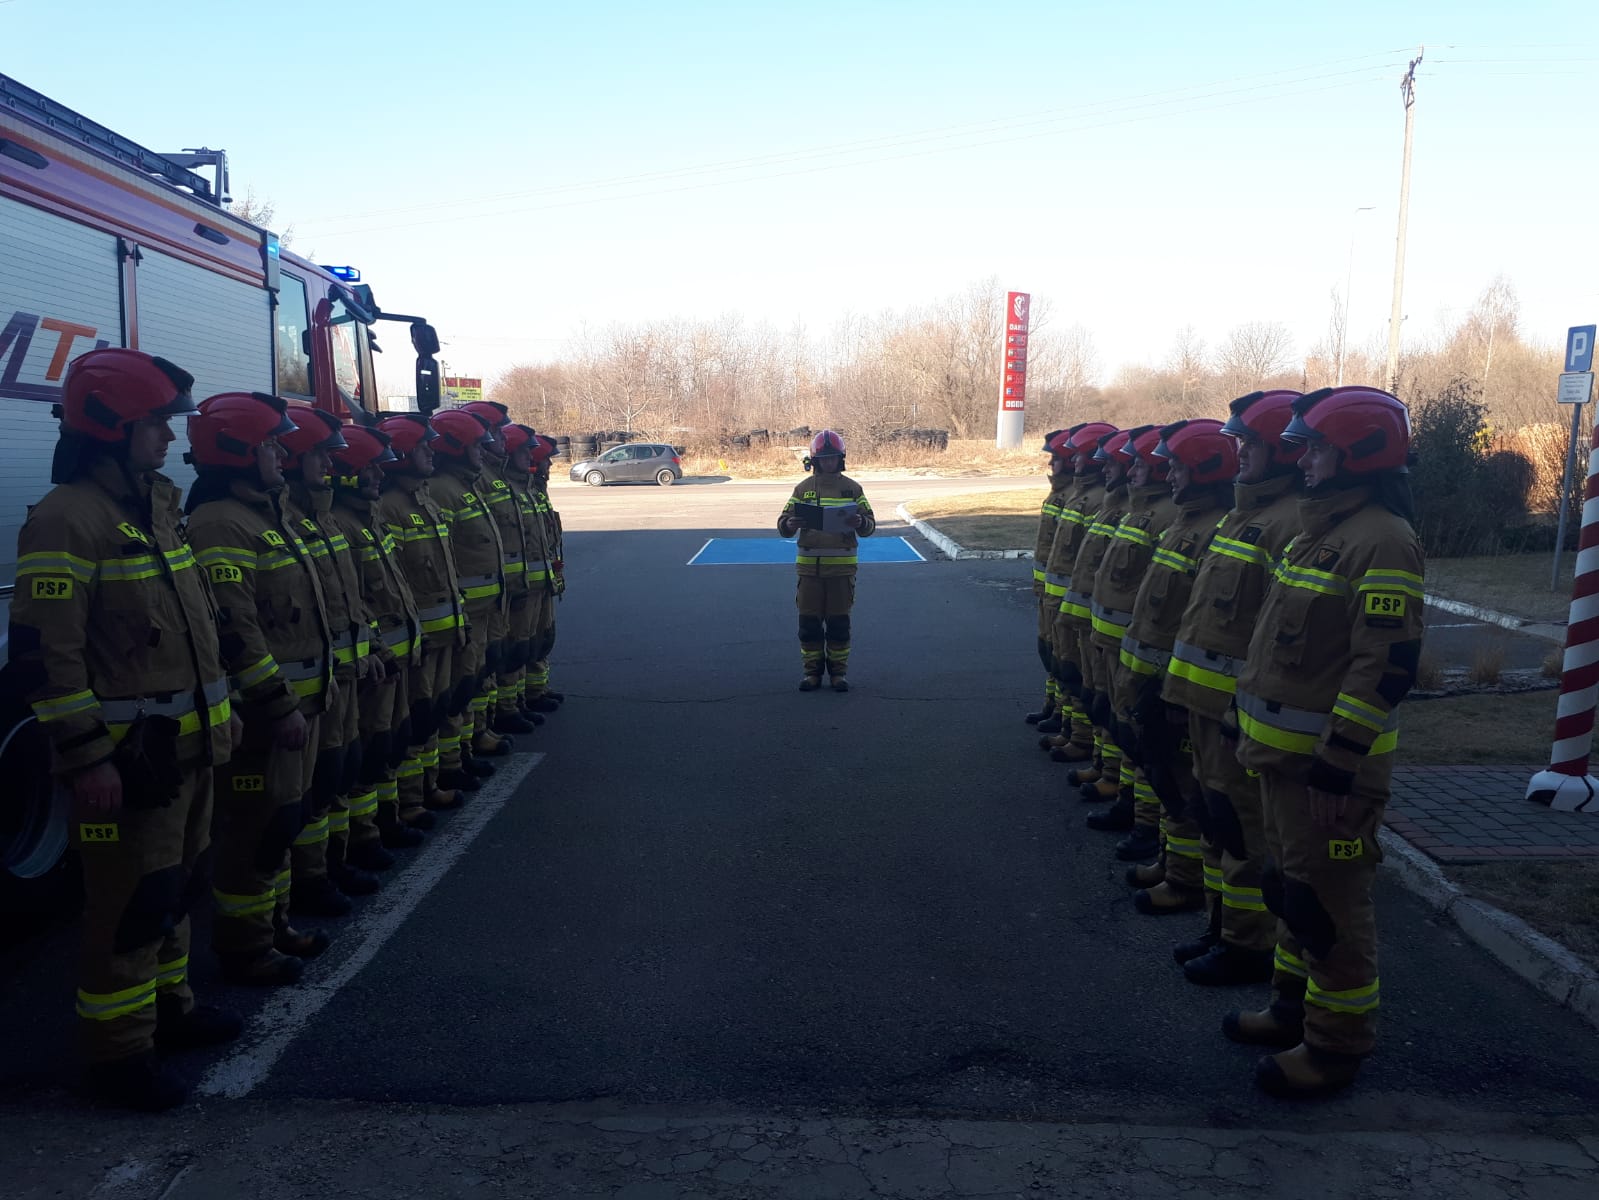 Minuta ciszy dla poległych strażaków z Ukrainy (zdjęcia)